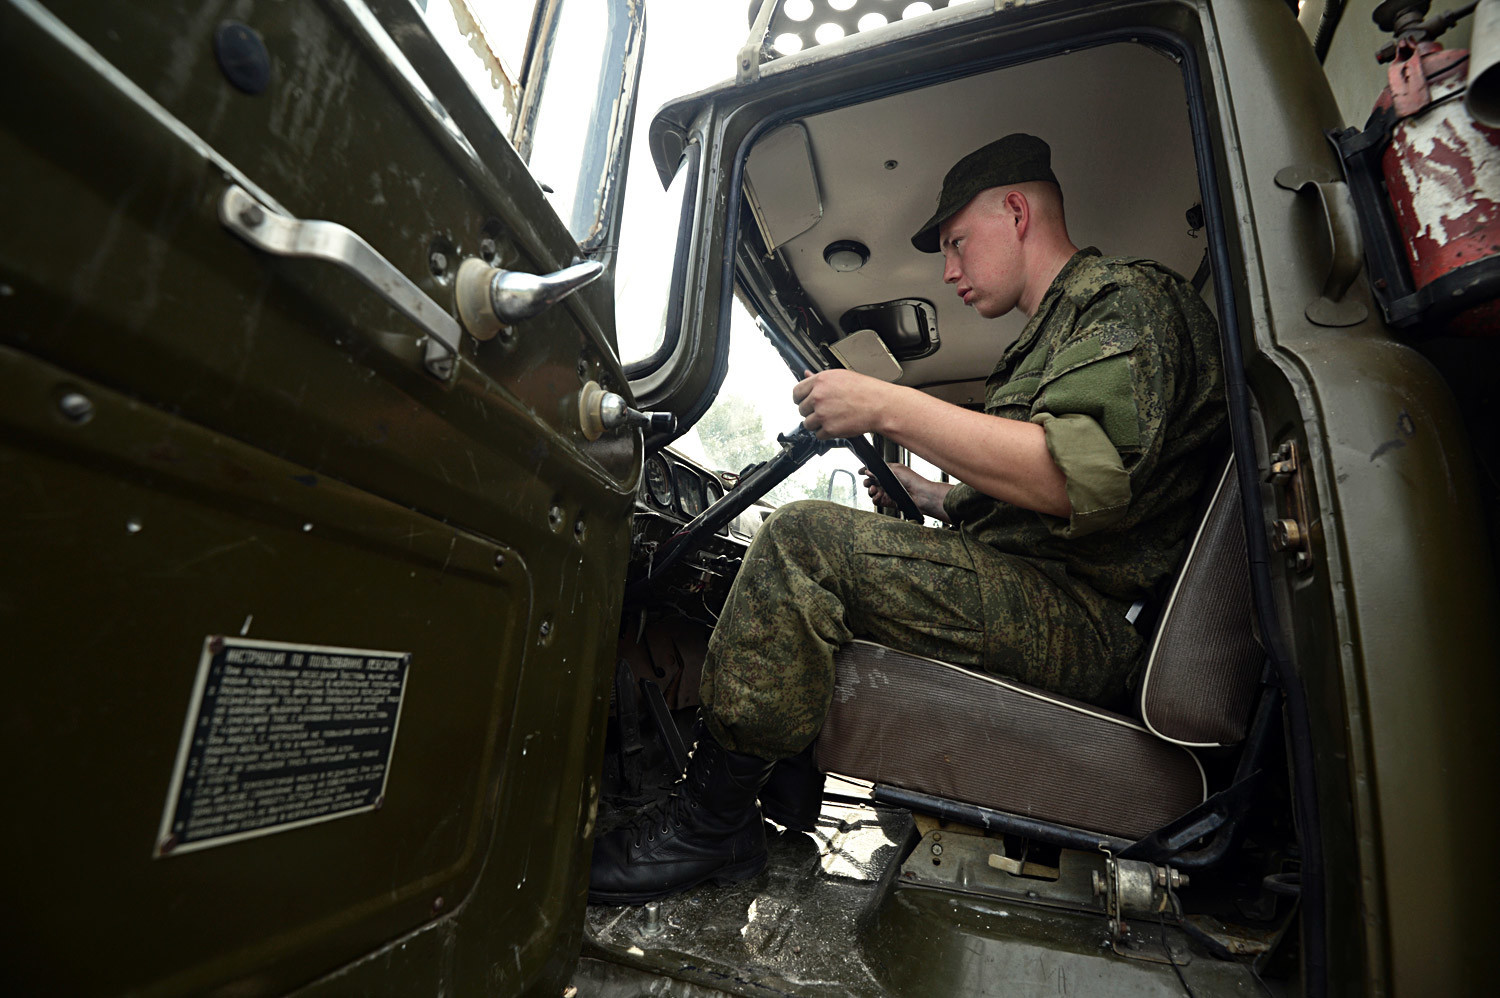 Vozač kamiona na objektu u Novosibirsku koji služi za pohranu vojne tehnike, tehničko opsluživanje i remont. Ovaj objekt će biti kamp za zbor rezervista.

